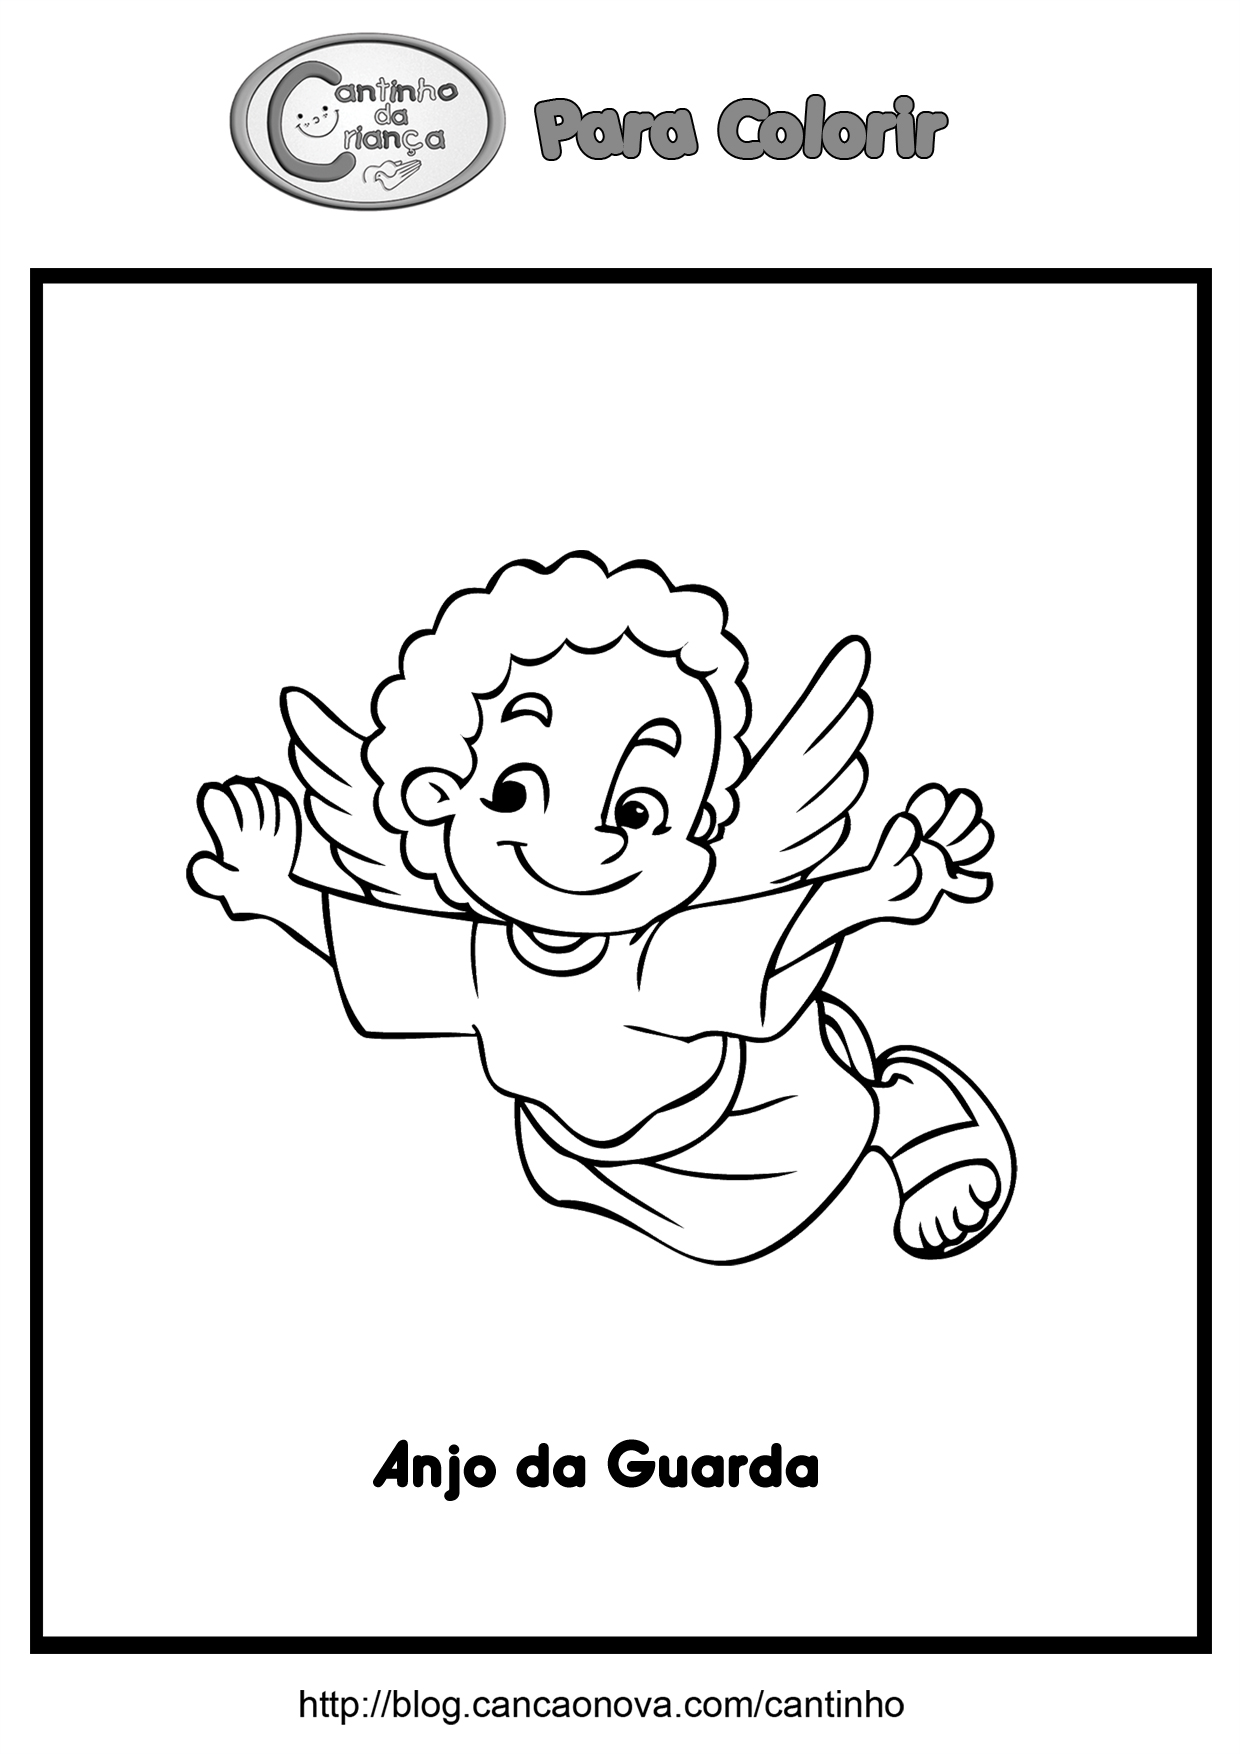 Anjo da Guarda | Cantinho da Criança Anjo da Guarda